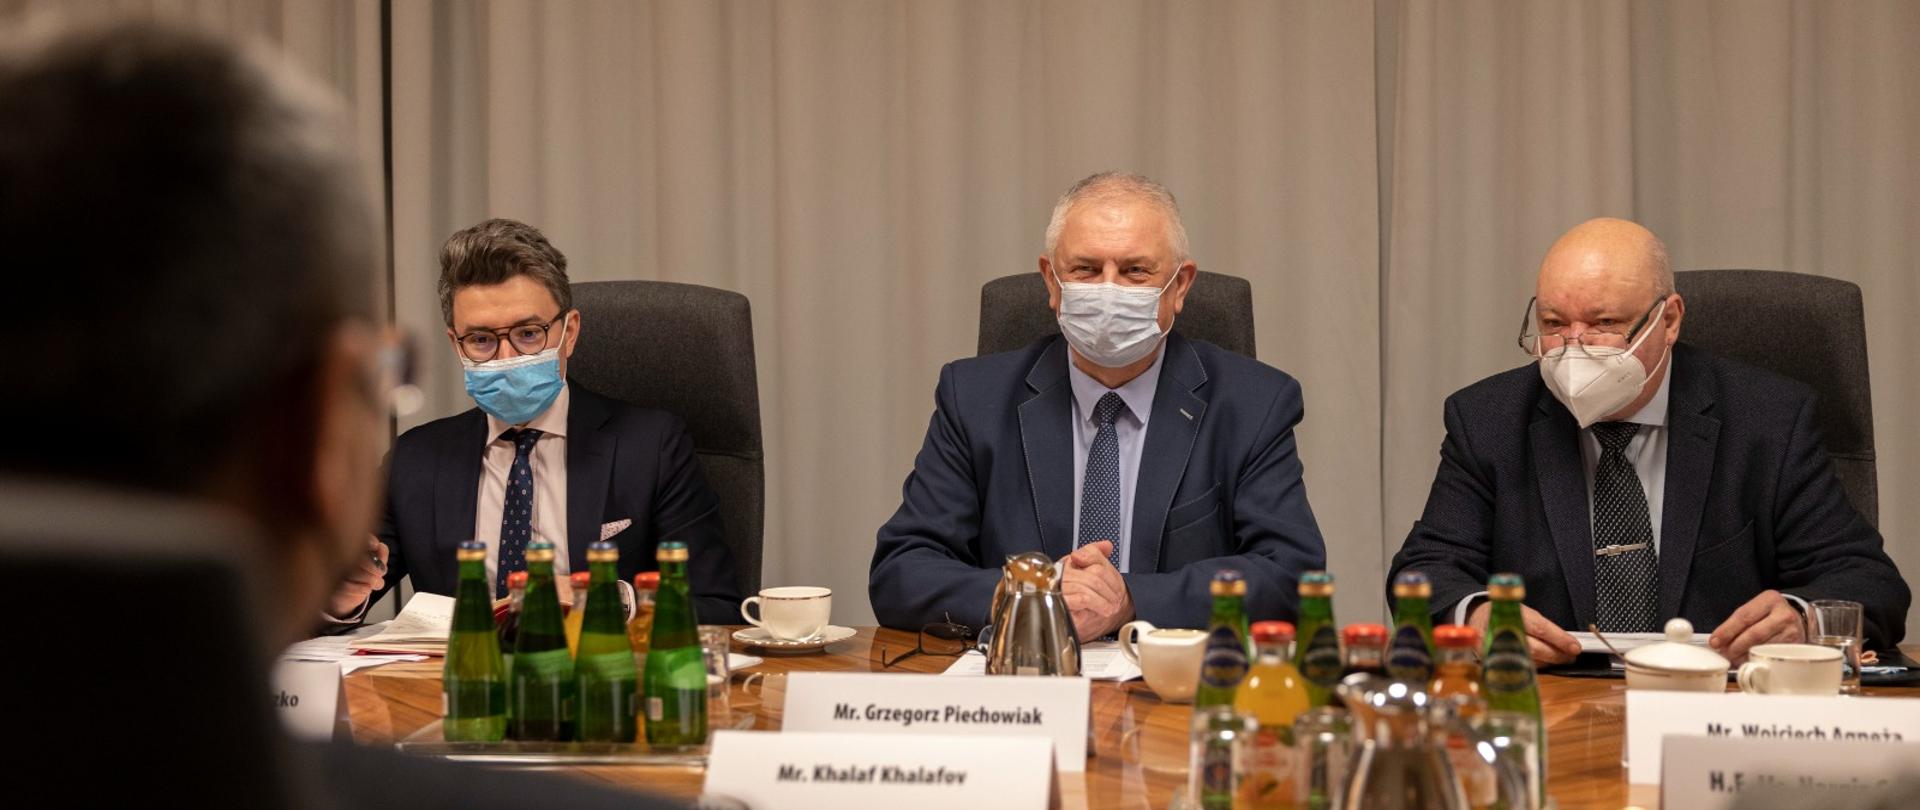 Wiceminister Grzegorz Piechowiak na spotkaniu z ambasadorem Azerbejdżanu siedzący za stołem z maseczką na twarzy